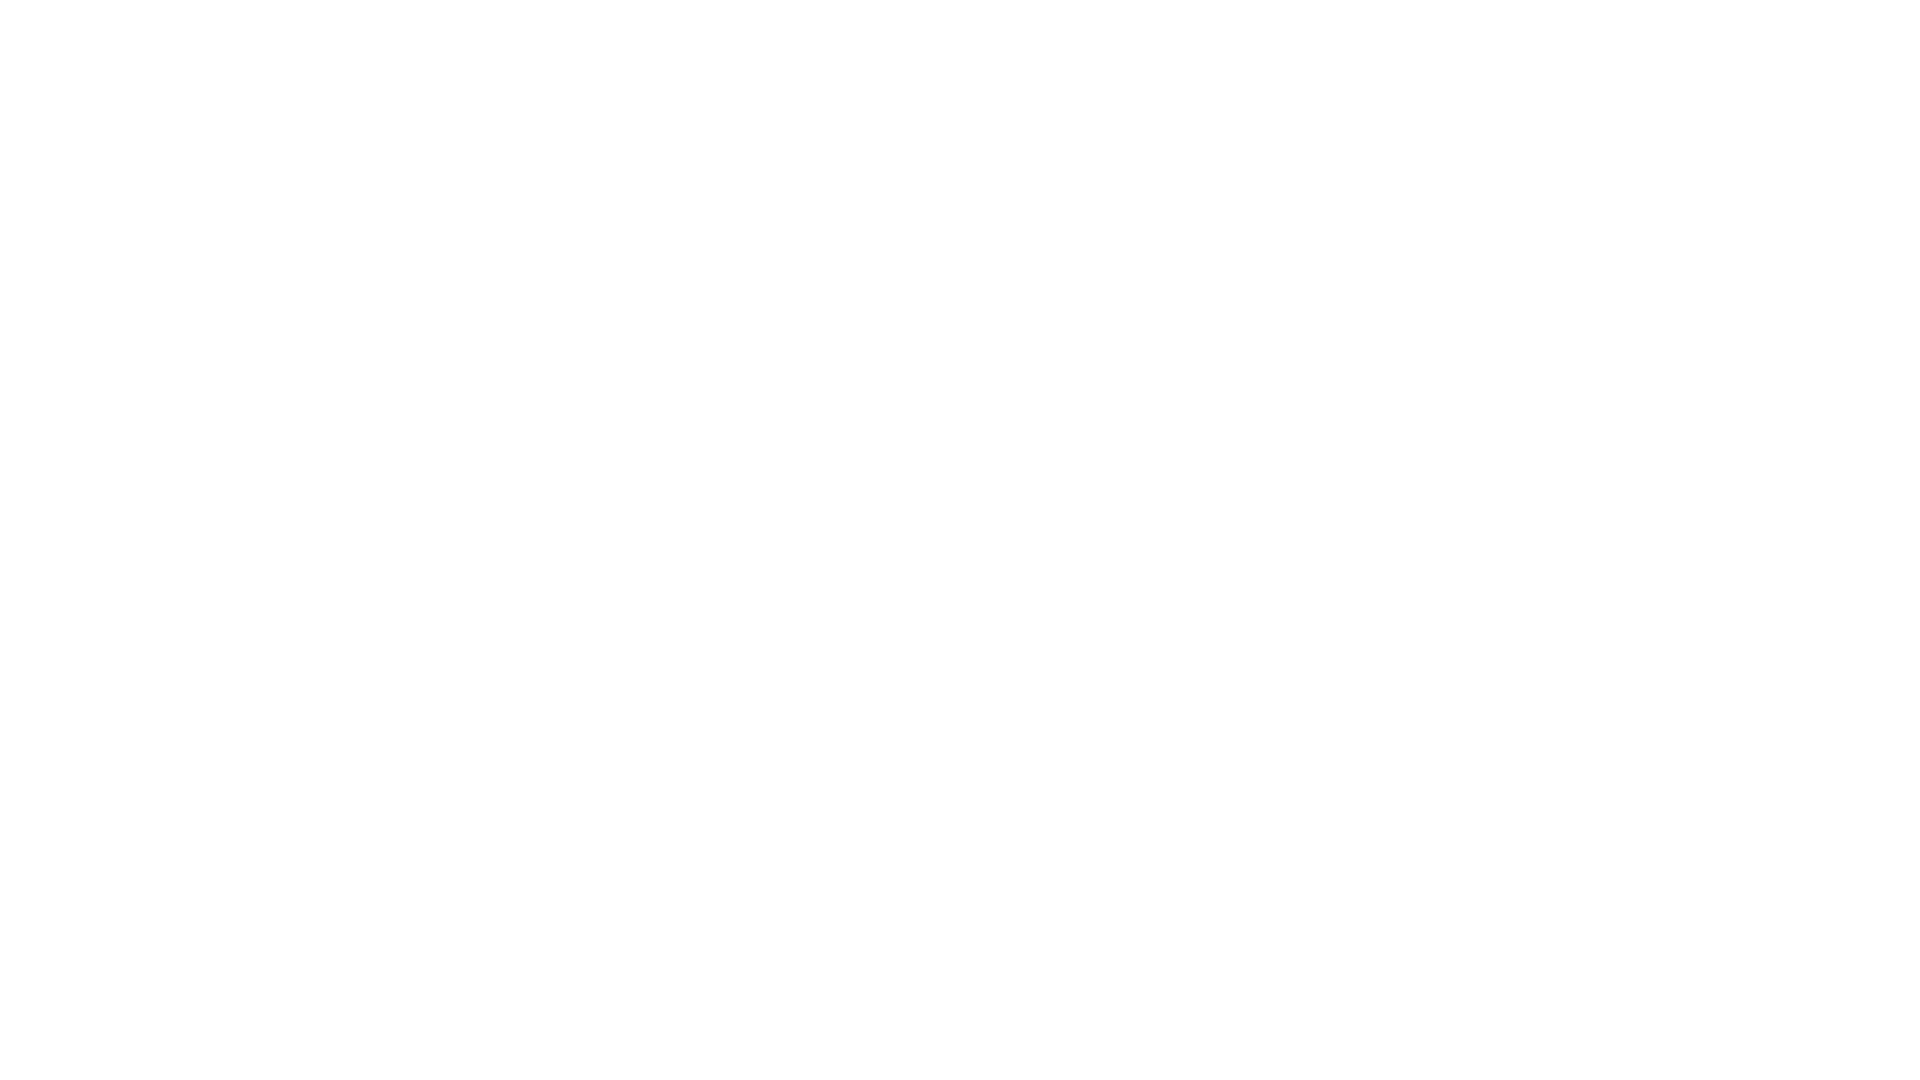 Octopus Signage